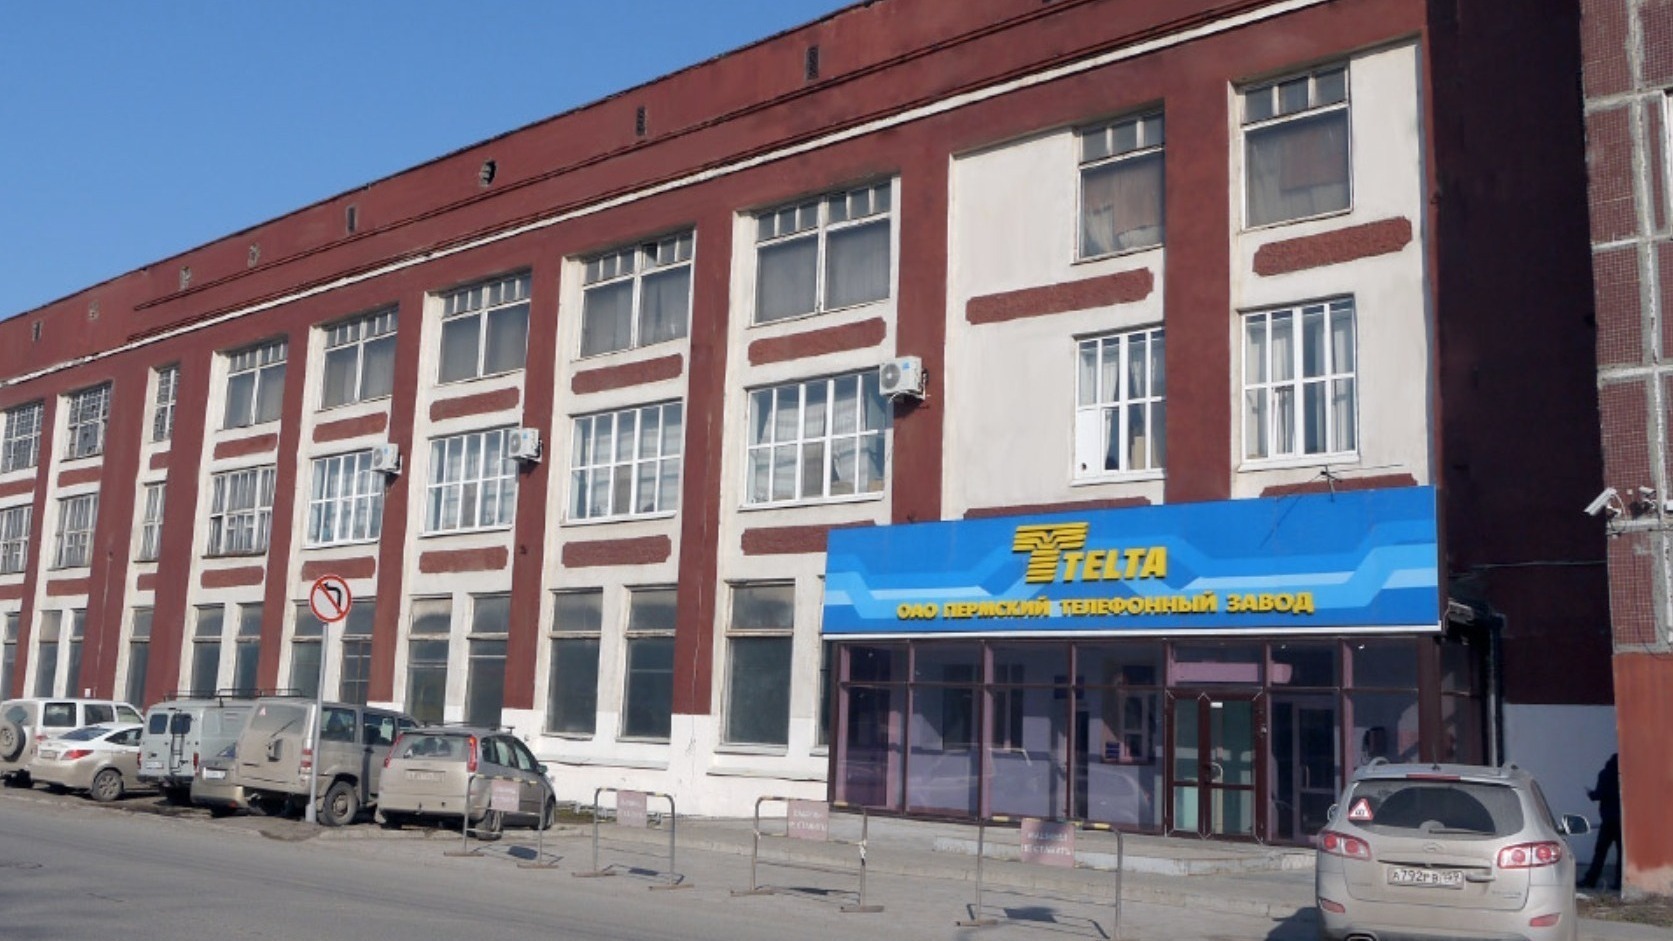 Следствие арестовало имущество топ-менеджеров пермского завода «Телта»